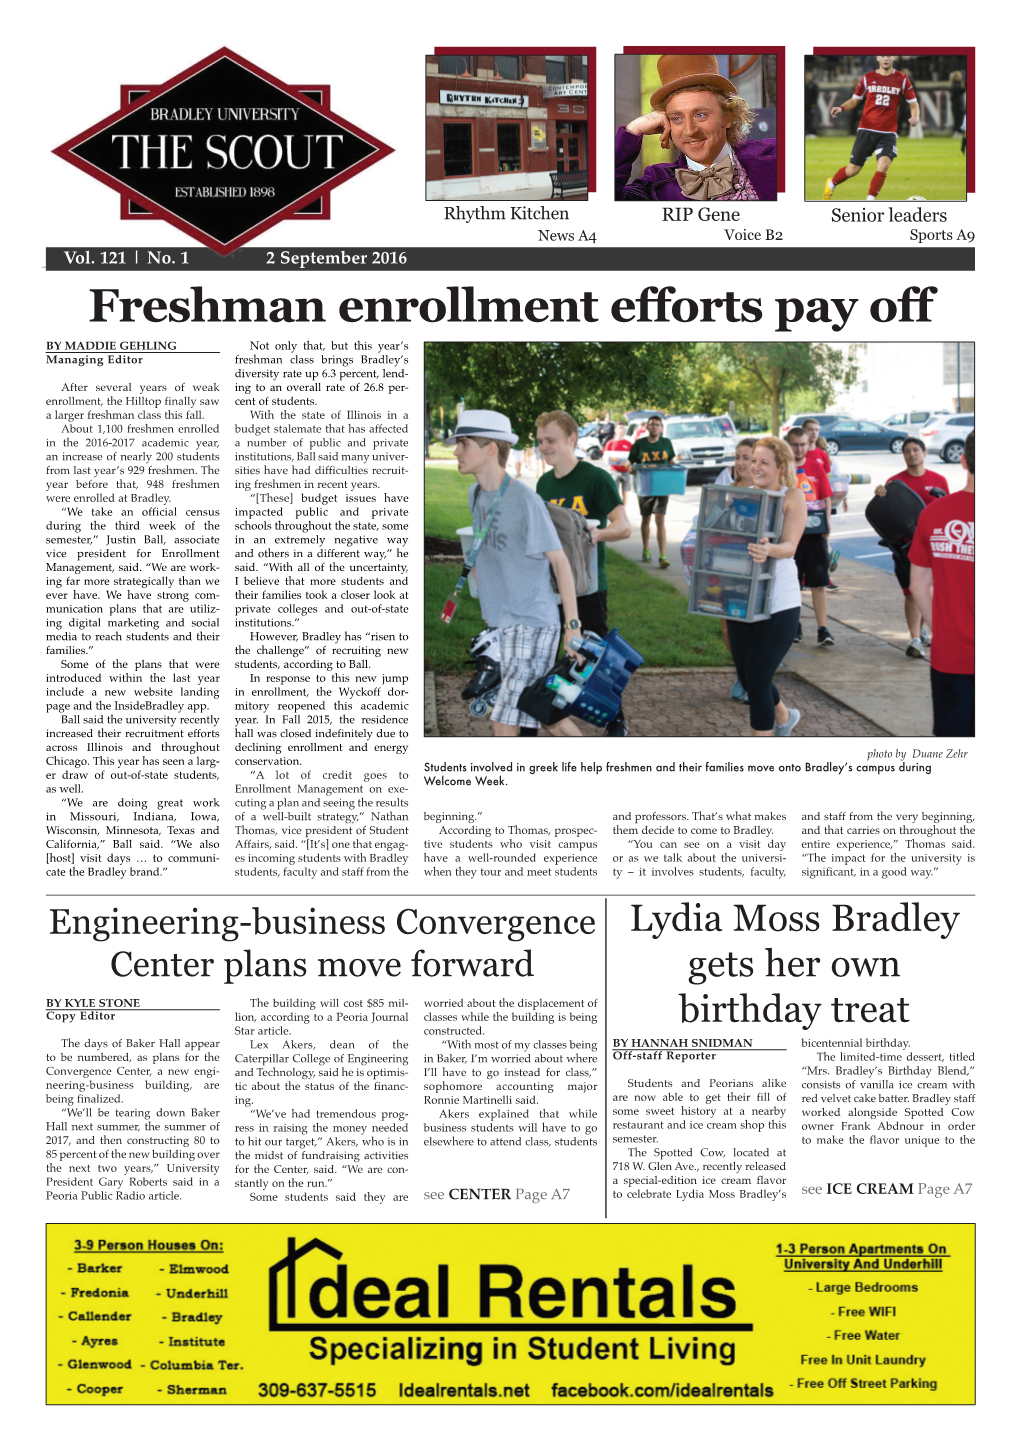 Freshman Enrollment Efforts Pay